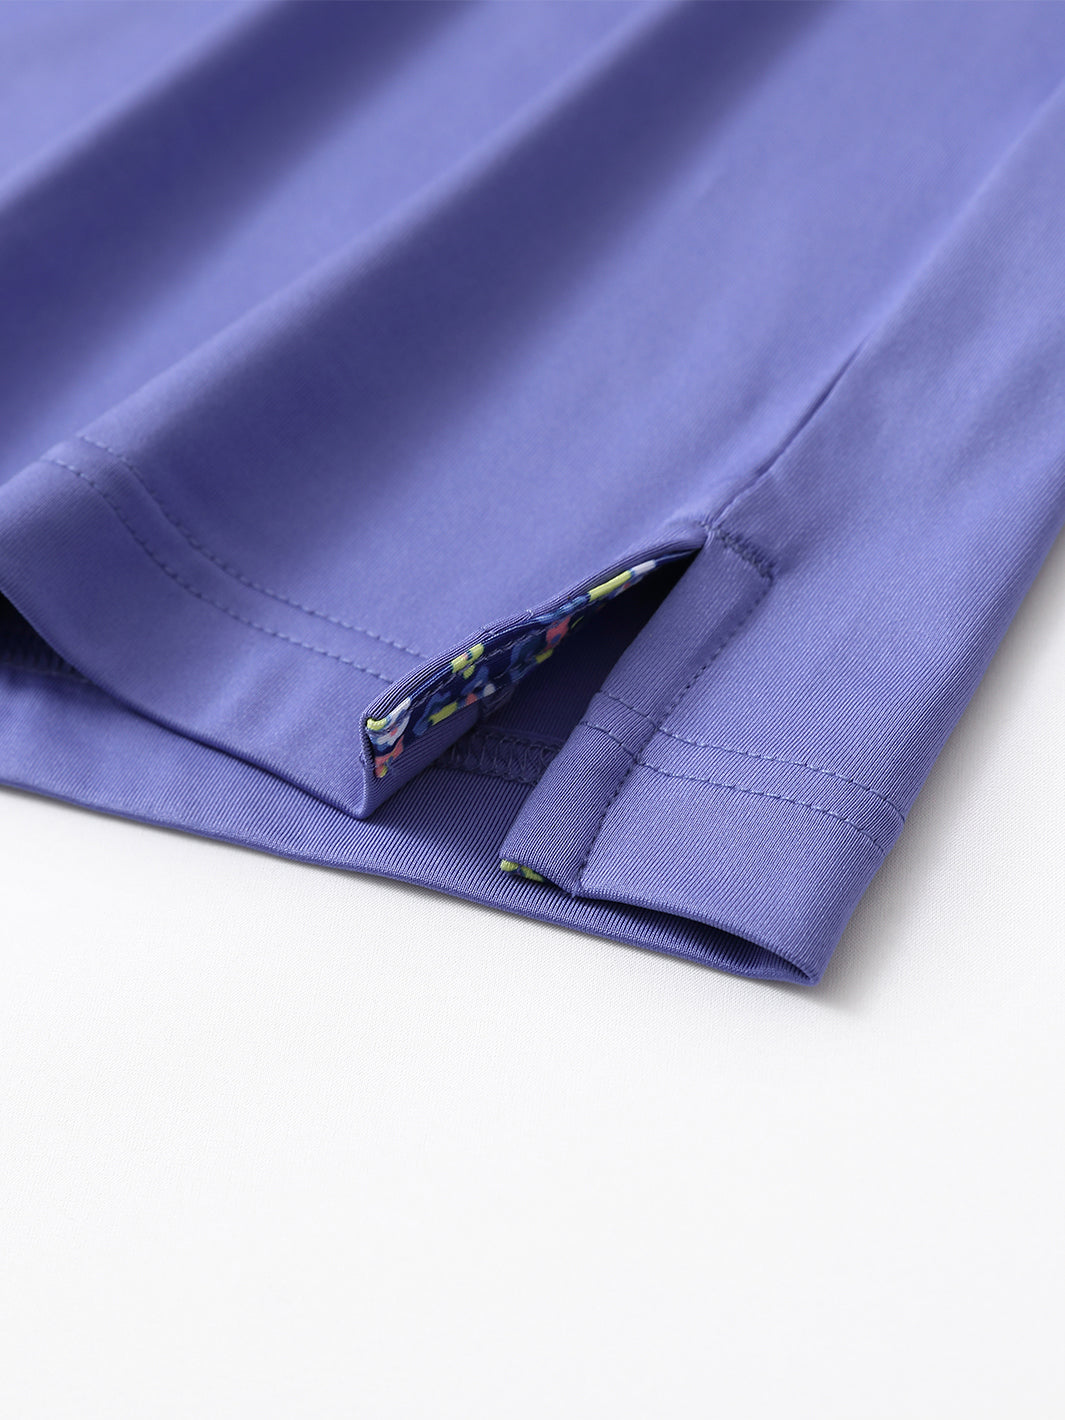 Men's Solid Jersey Golf Shirts-Bluish Violet